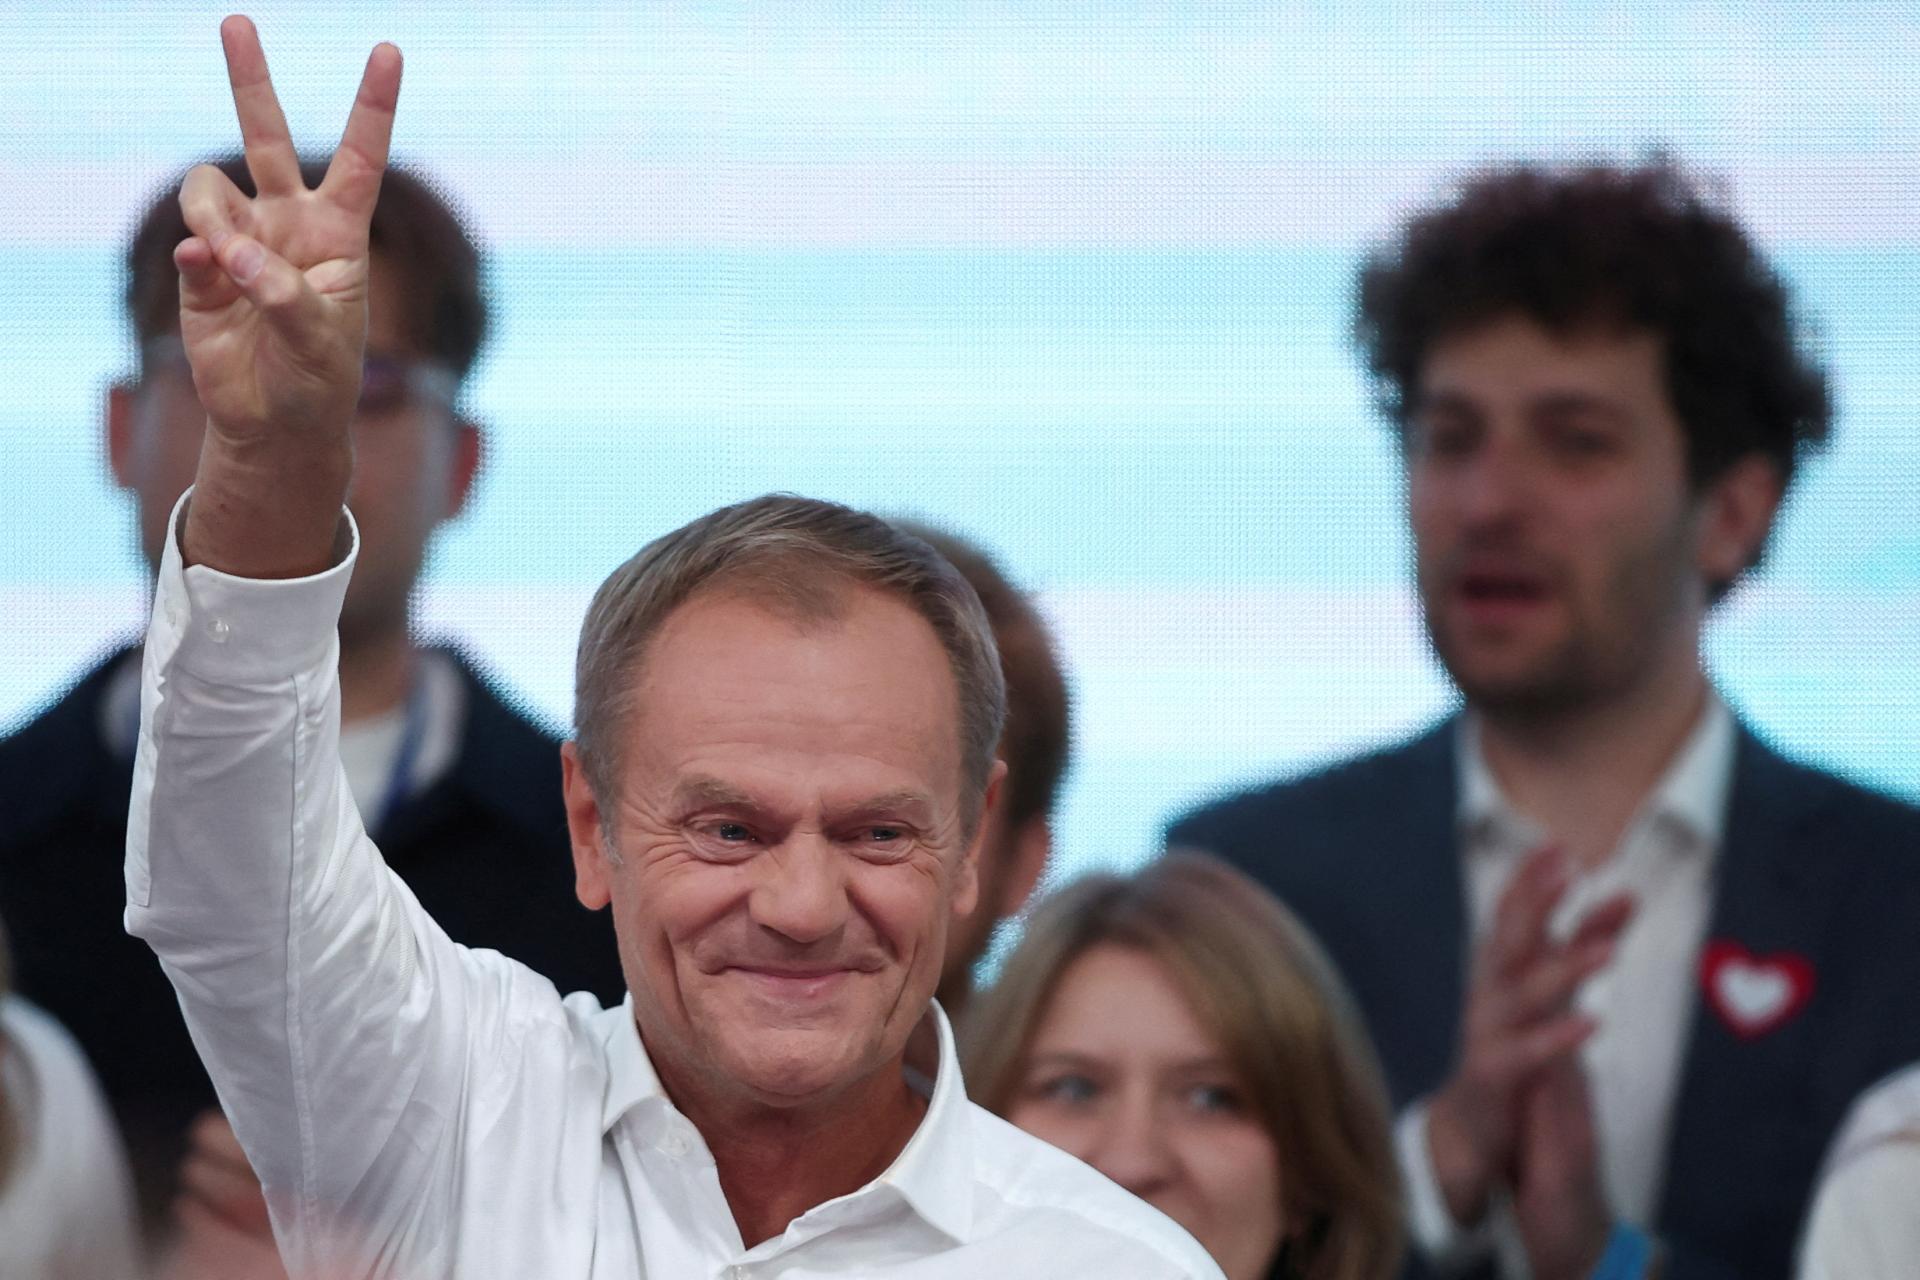 Polski poseł: Raczej nie powinien być premierem kraju, tak zdecydowali wyborcy